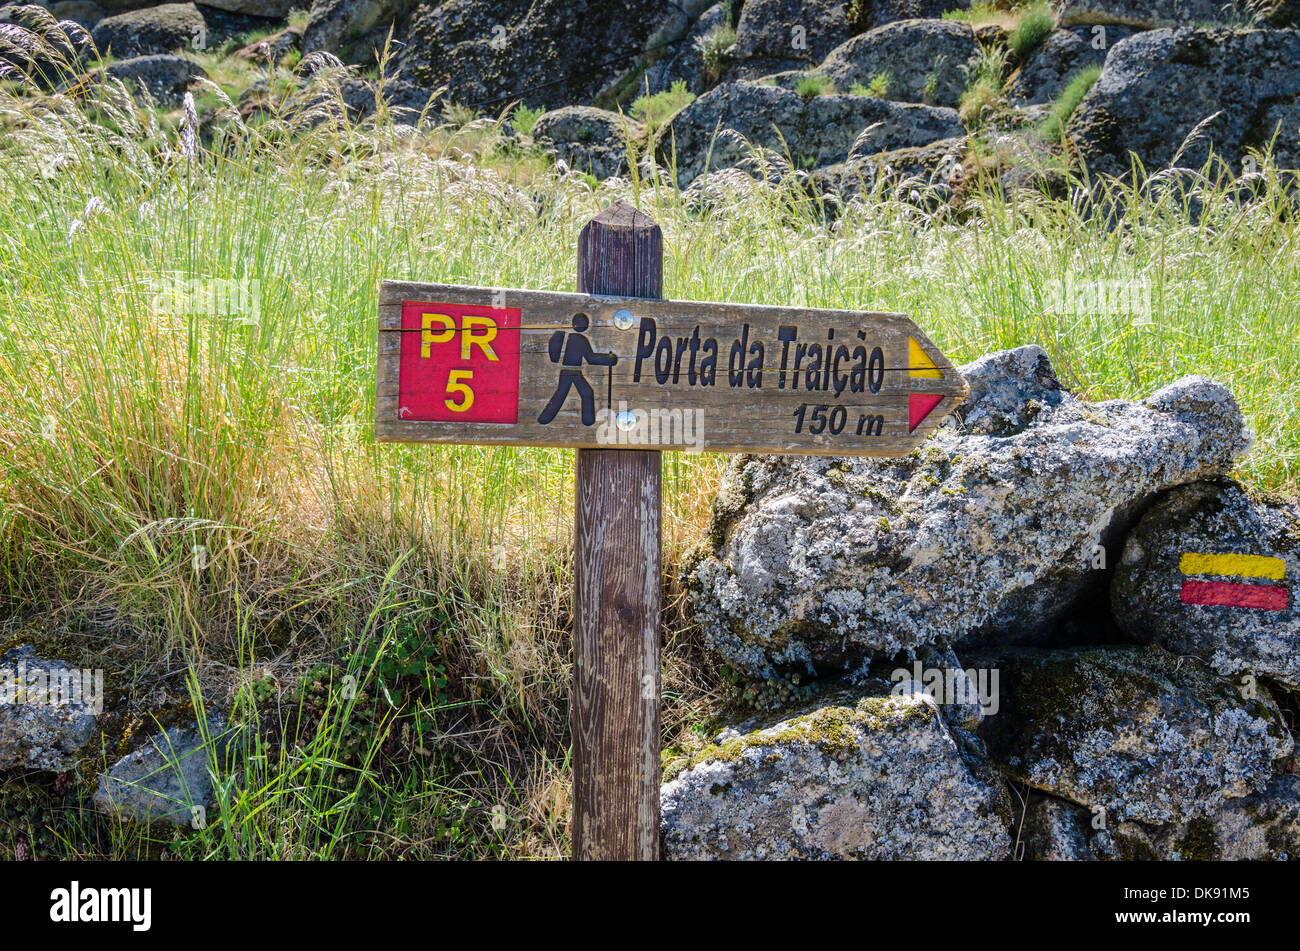 Inscrivez-vous pour le post Porta da Traicao sur rochers Trail, un circuit de marche à Monsanto, Portugal Banque D'Images